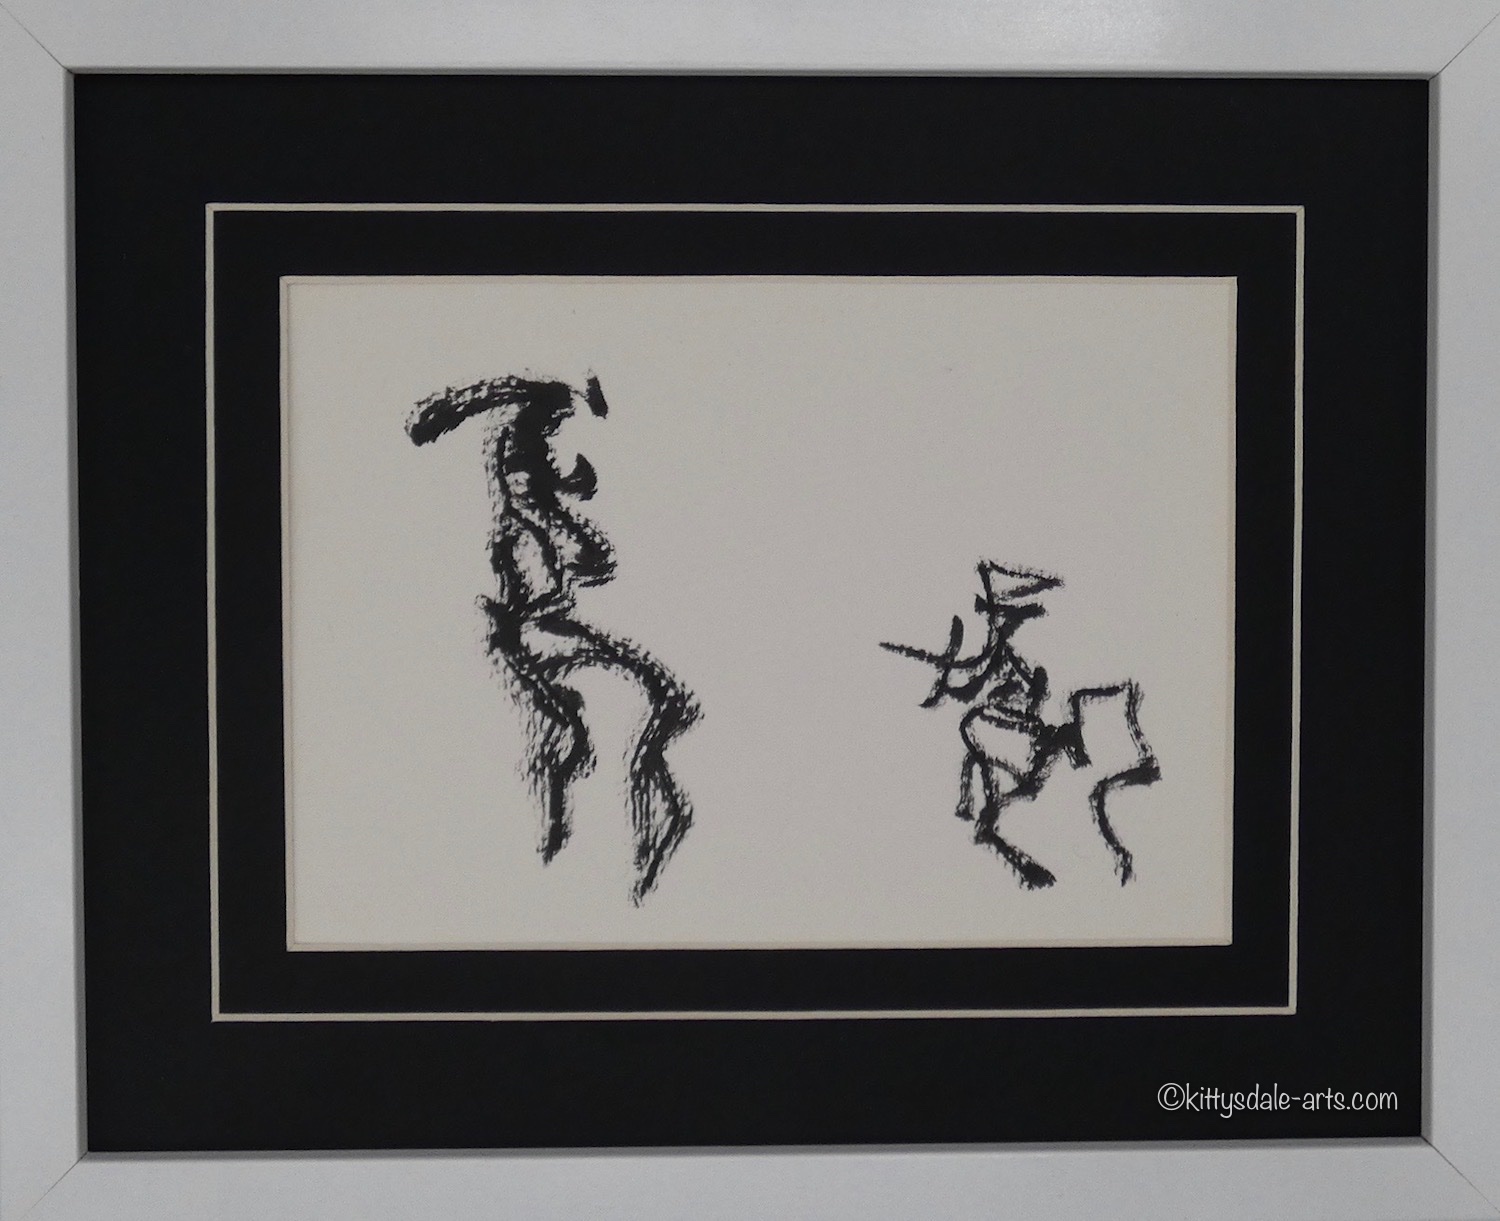 Framed figurative ink on paper artwork